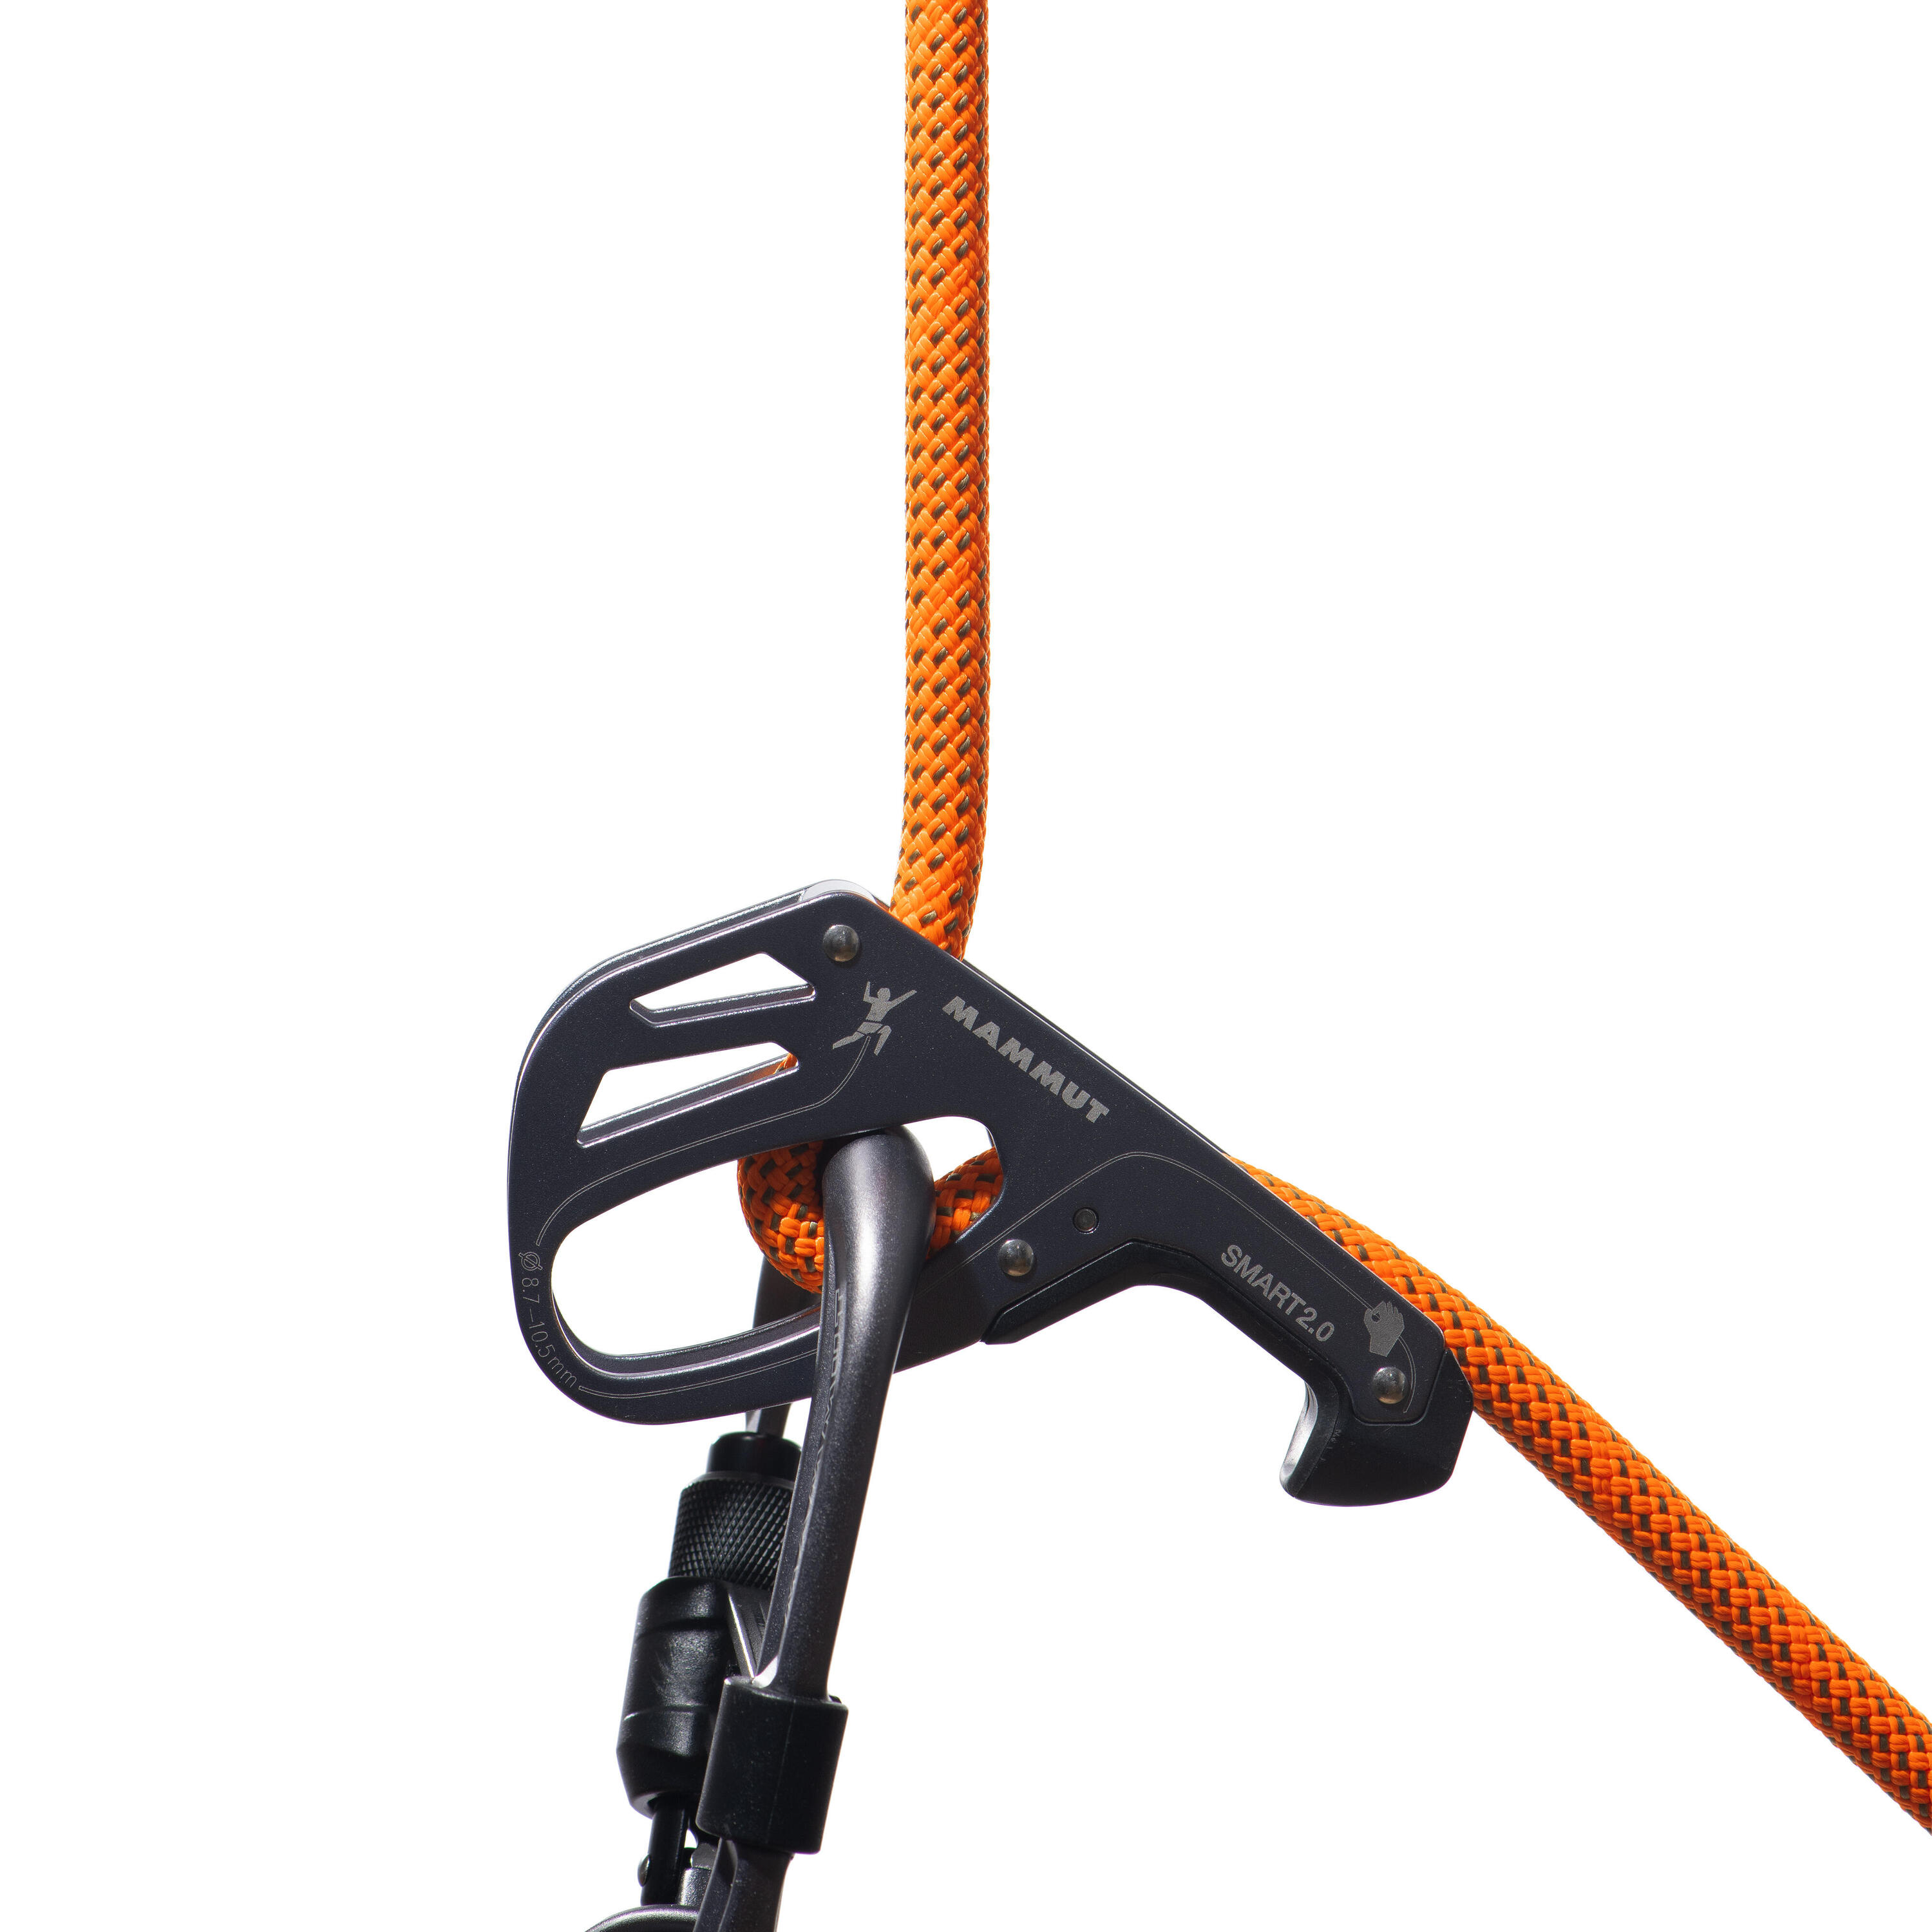 Crag Dry Single Rope 9.8 mm x 70m - Orange 4/4